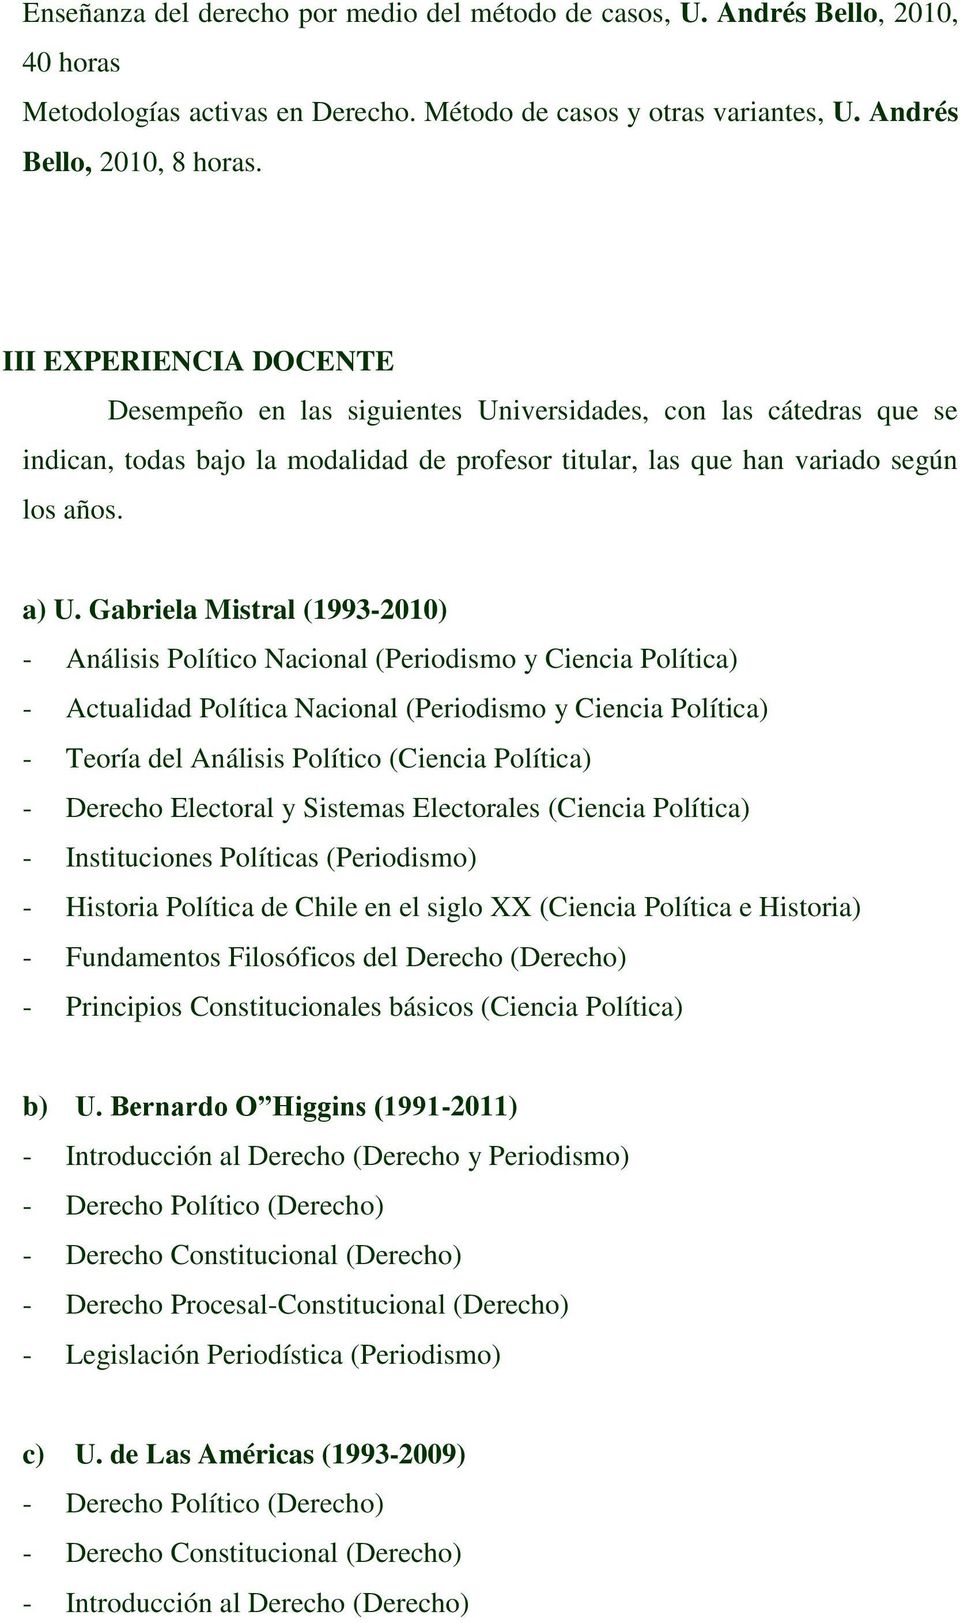 Gabriela Mistral (1993-2010) - Análisis Político Nacional (Periodismo y Ciencia Política) - Actualidad Política Nacional (Periodismo y Ciencia Política) - Teoría del Análisis Político (Ciencia